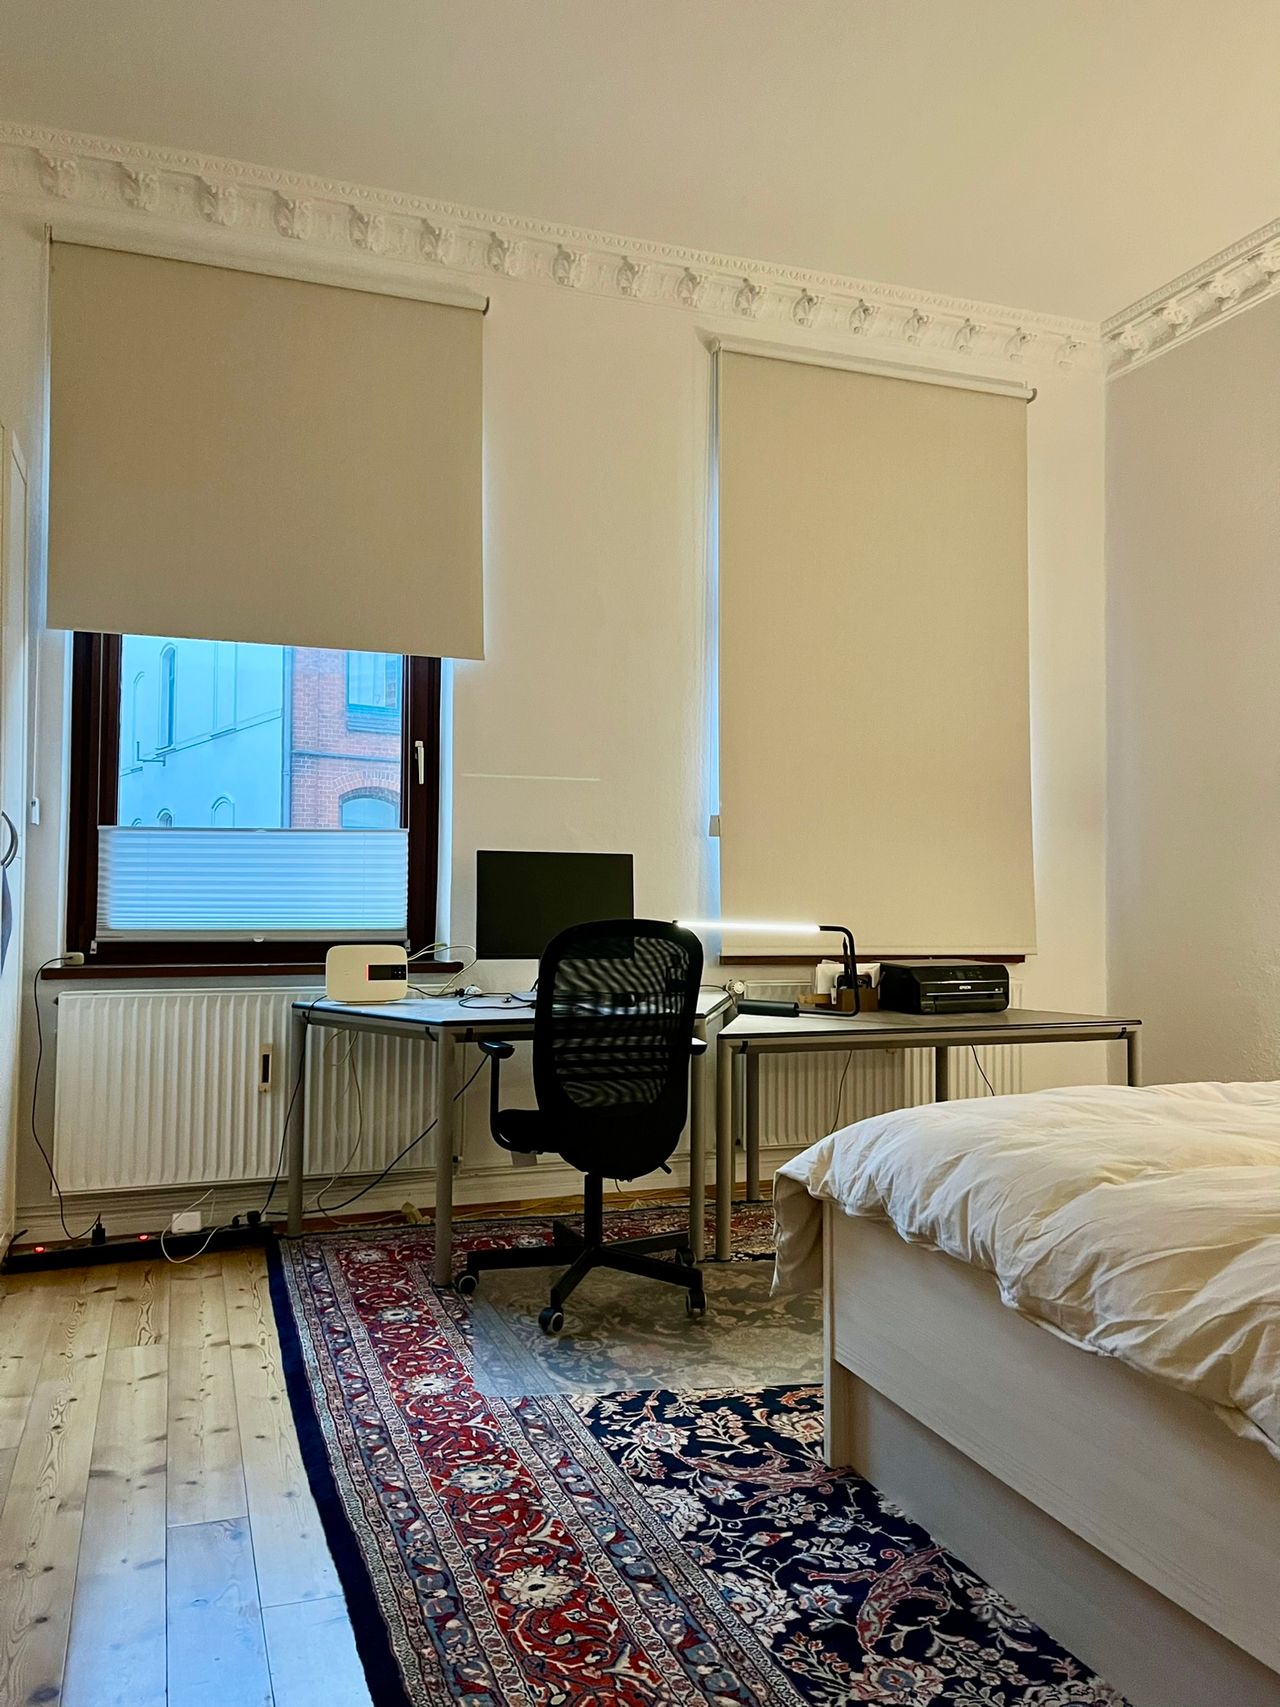 Updated 4 room apartment at Lindener Marktplatz